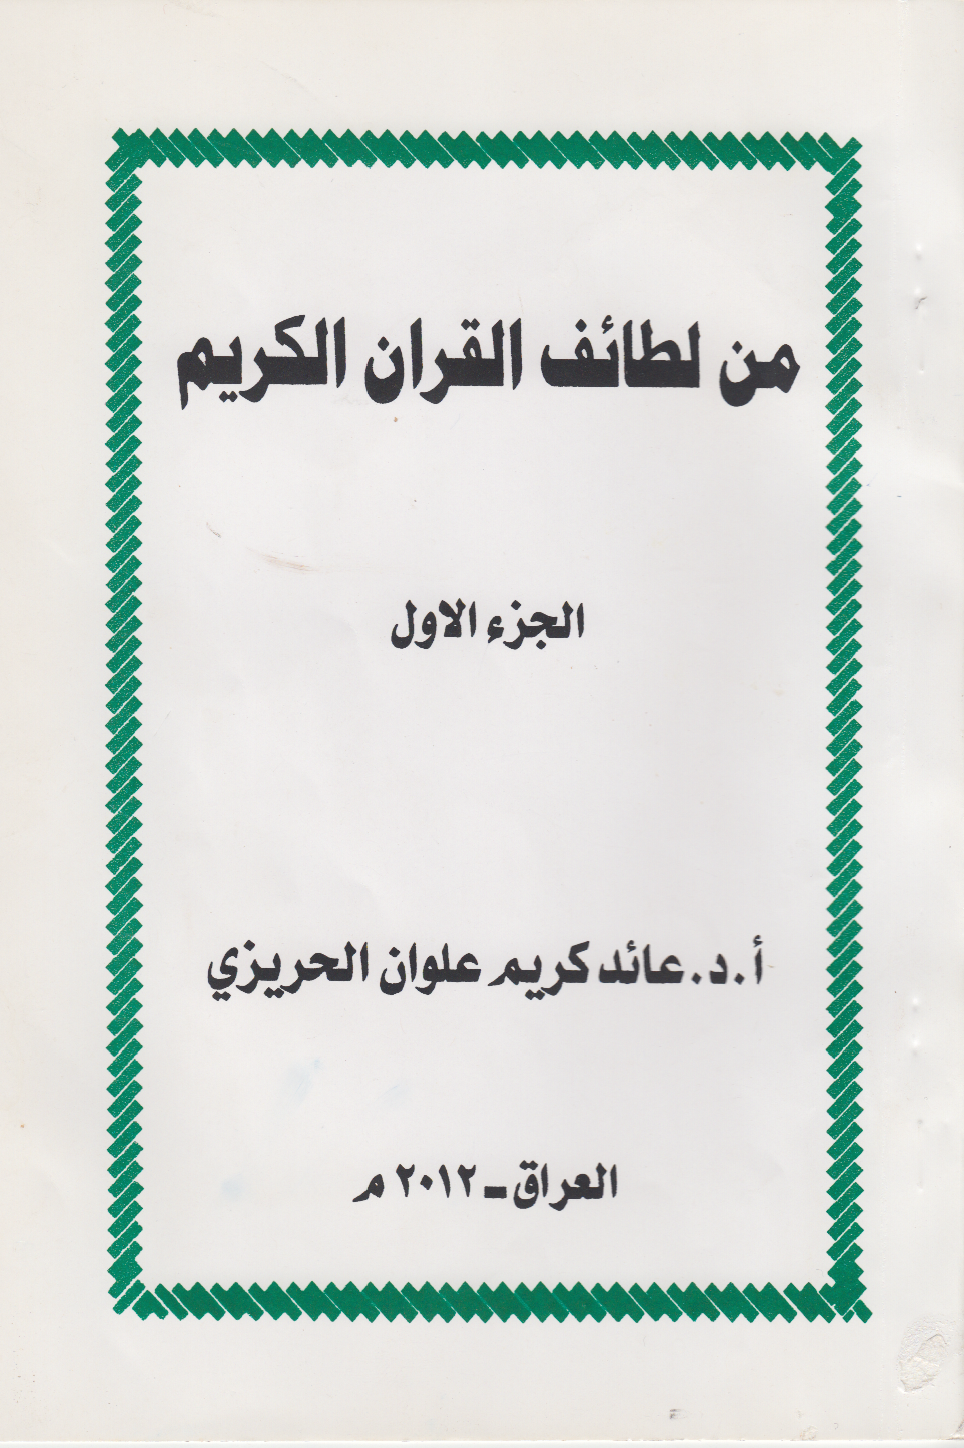 تحميل كتاب من لطائف القرآن الكريم (الجزء الأول) للمؤلف: الدكتور عائد كريم علوان الحريزي